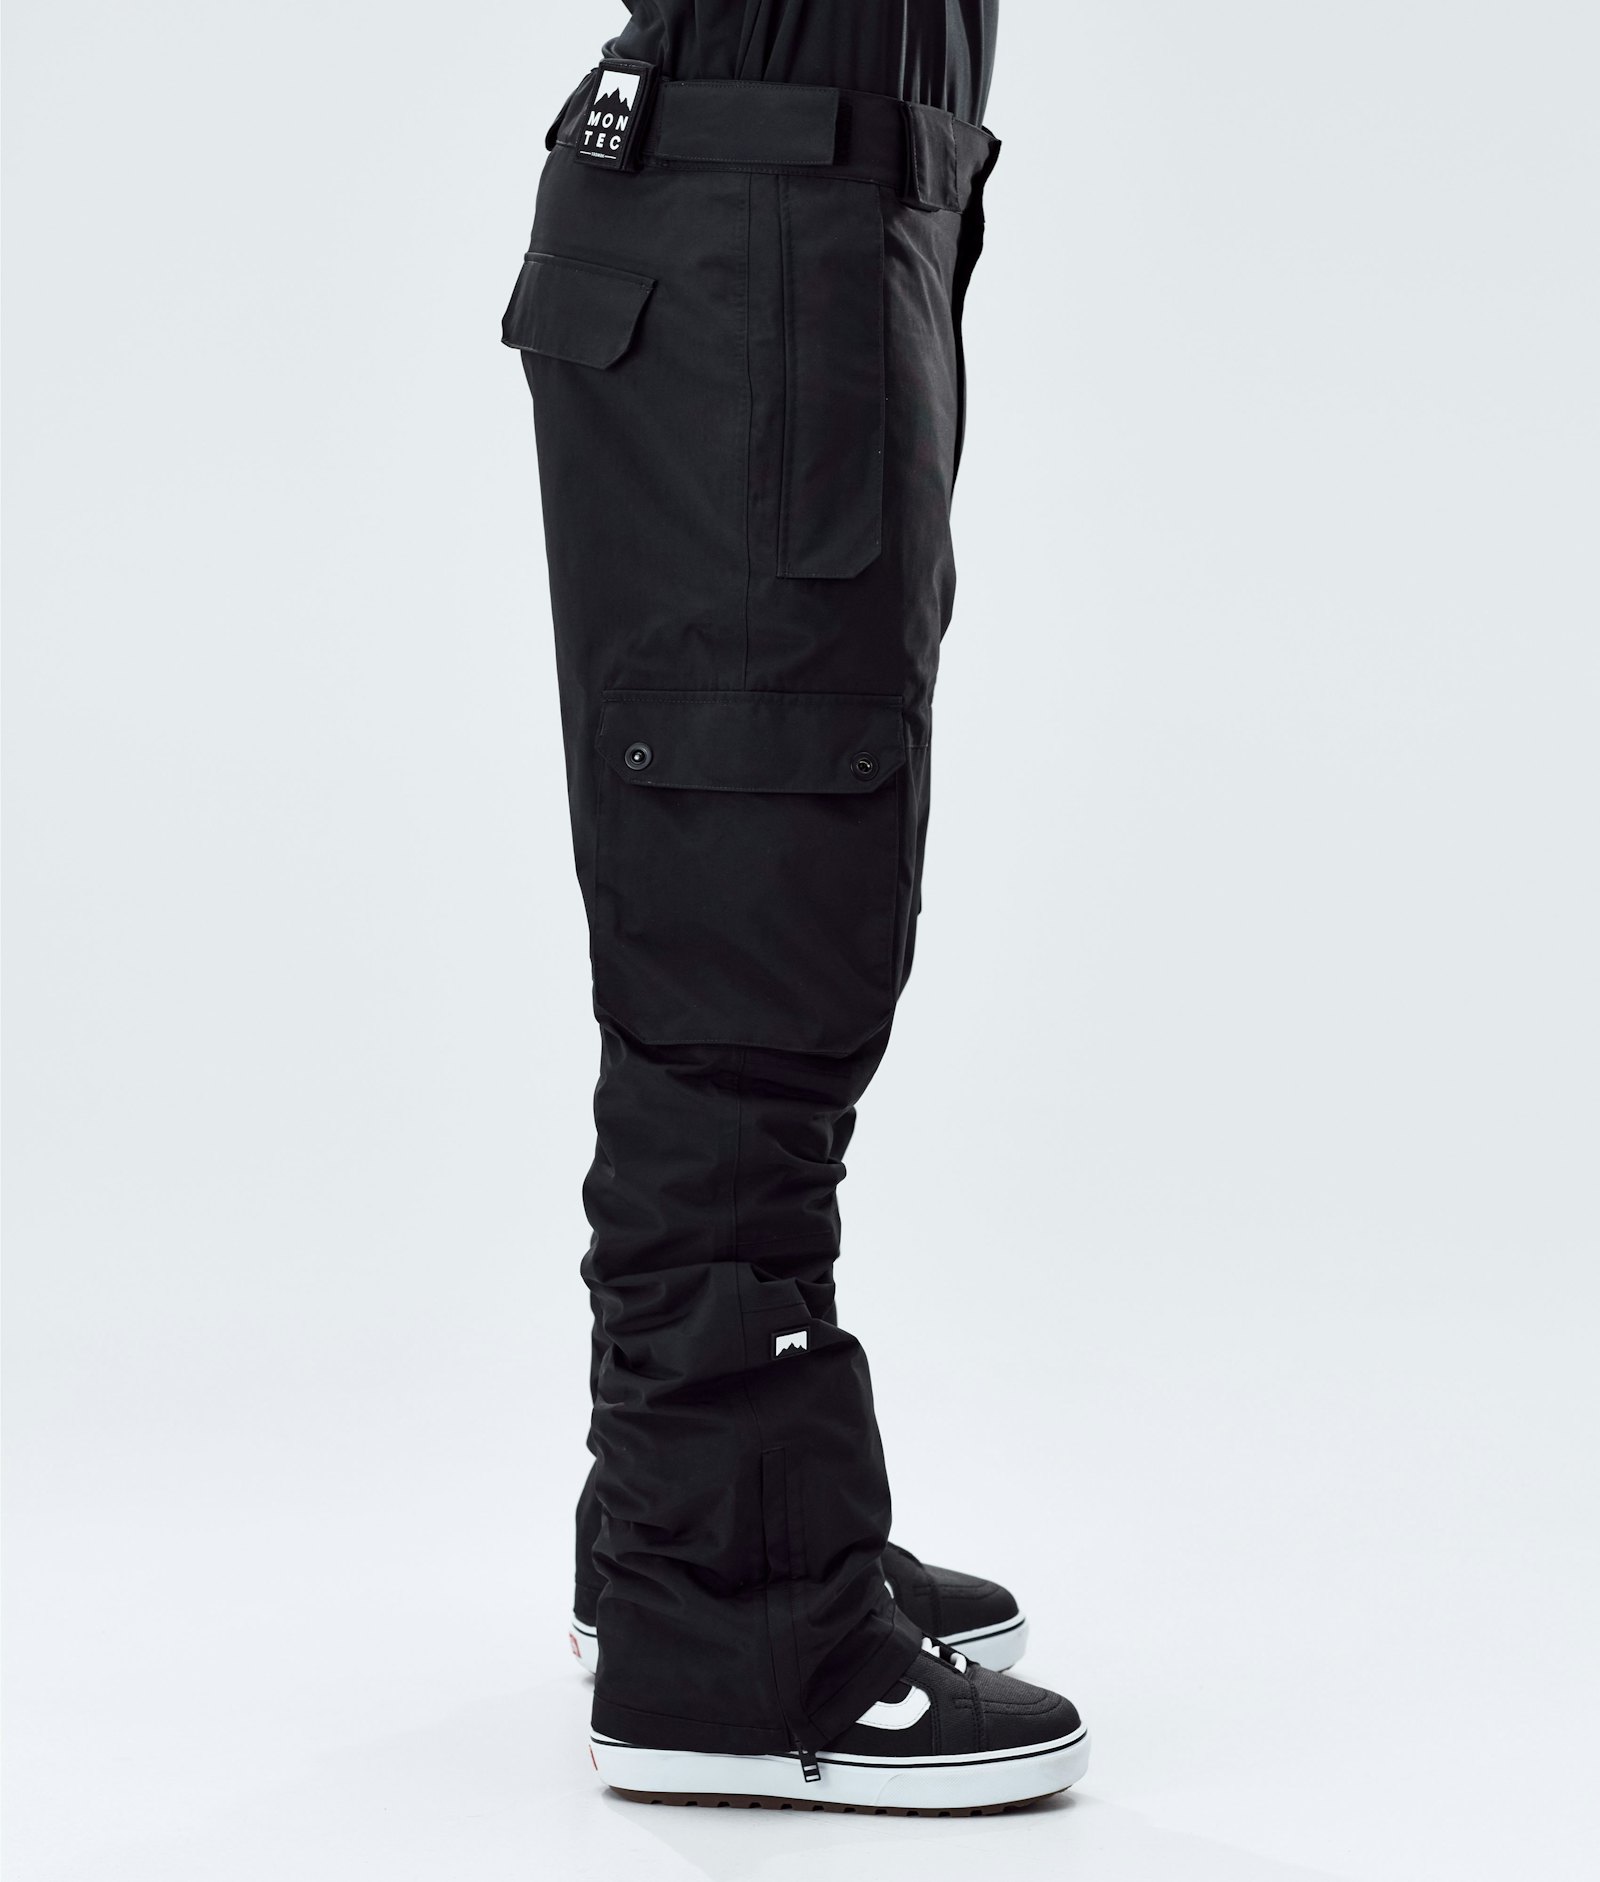 Montec Doom 2020 Spodnie Snowboardowe Mężczyźni Black